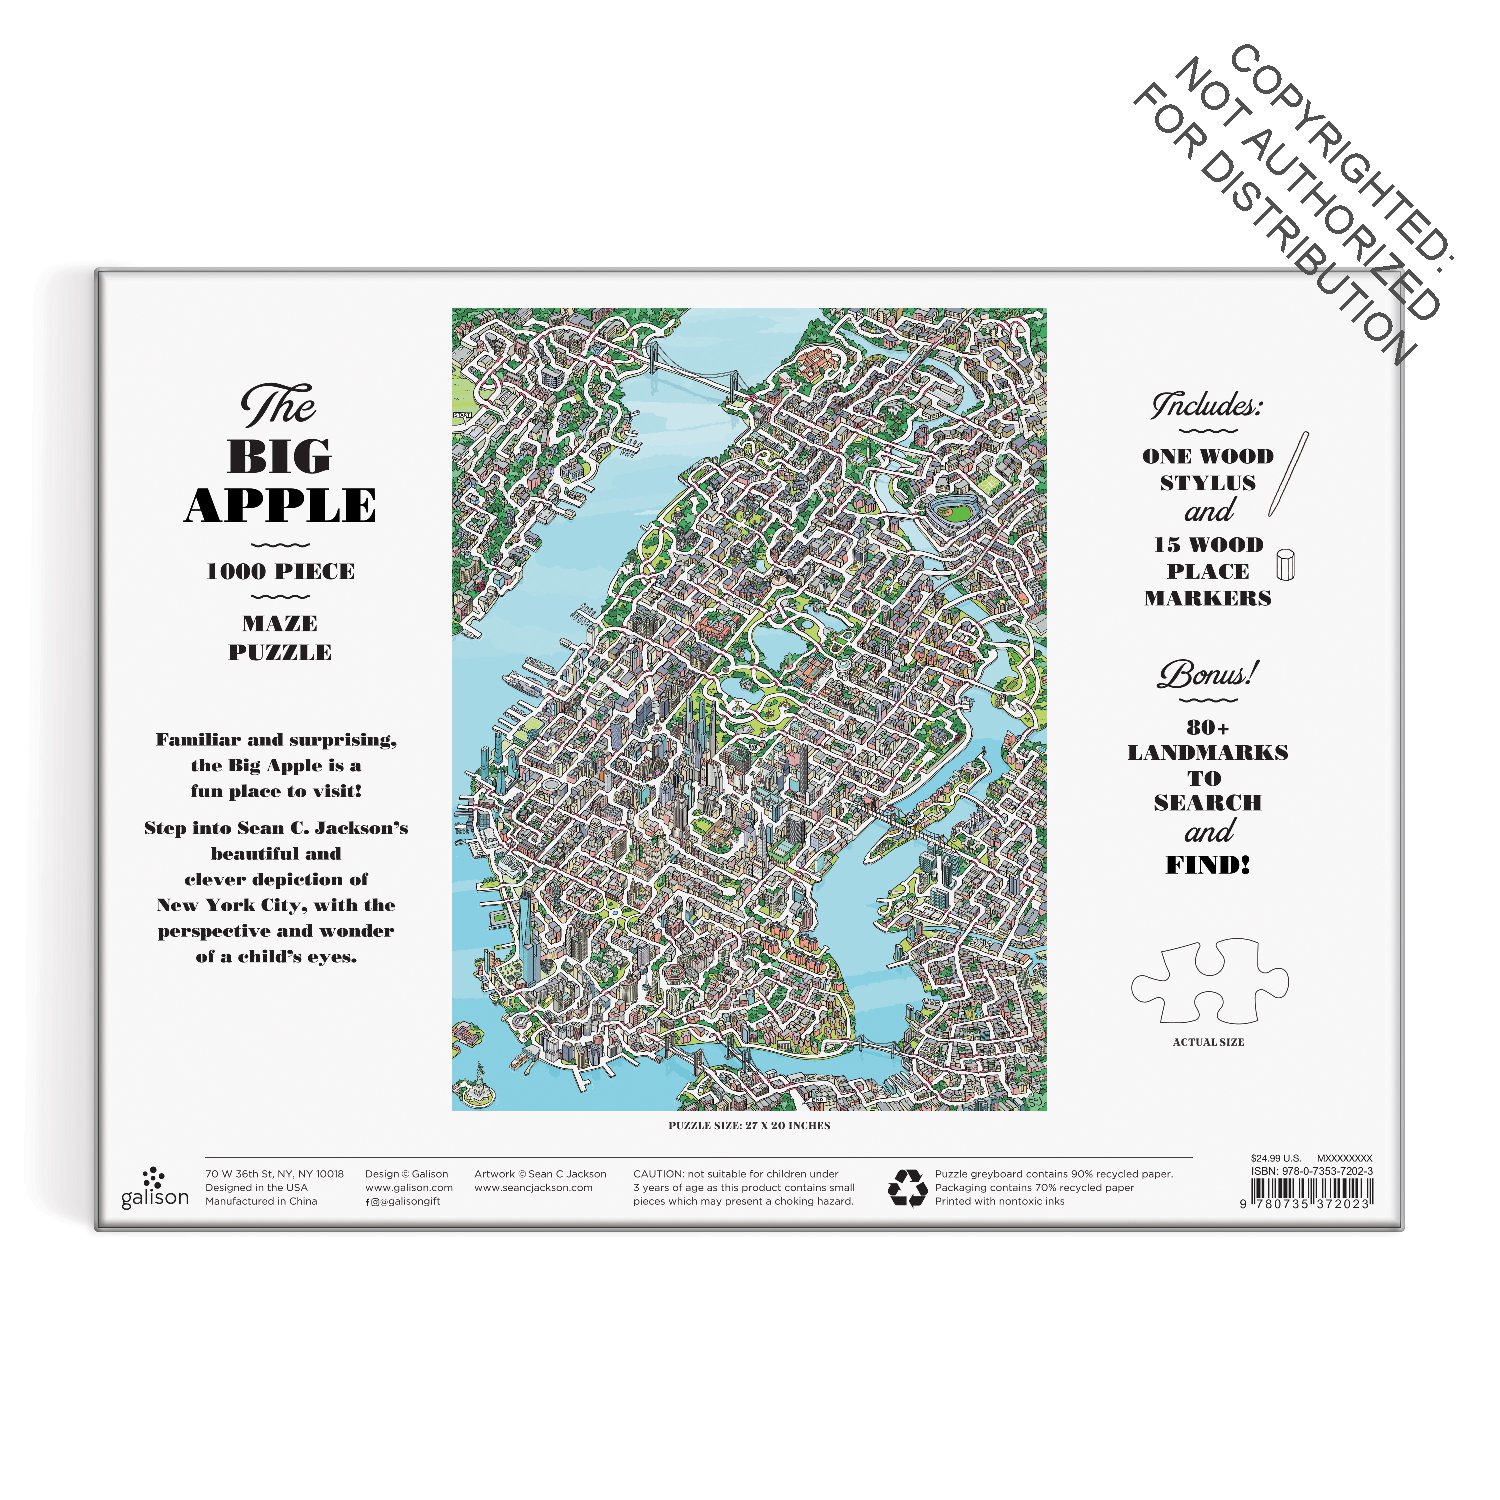 The Big Apple 1000 Piece Maze Puzzle